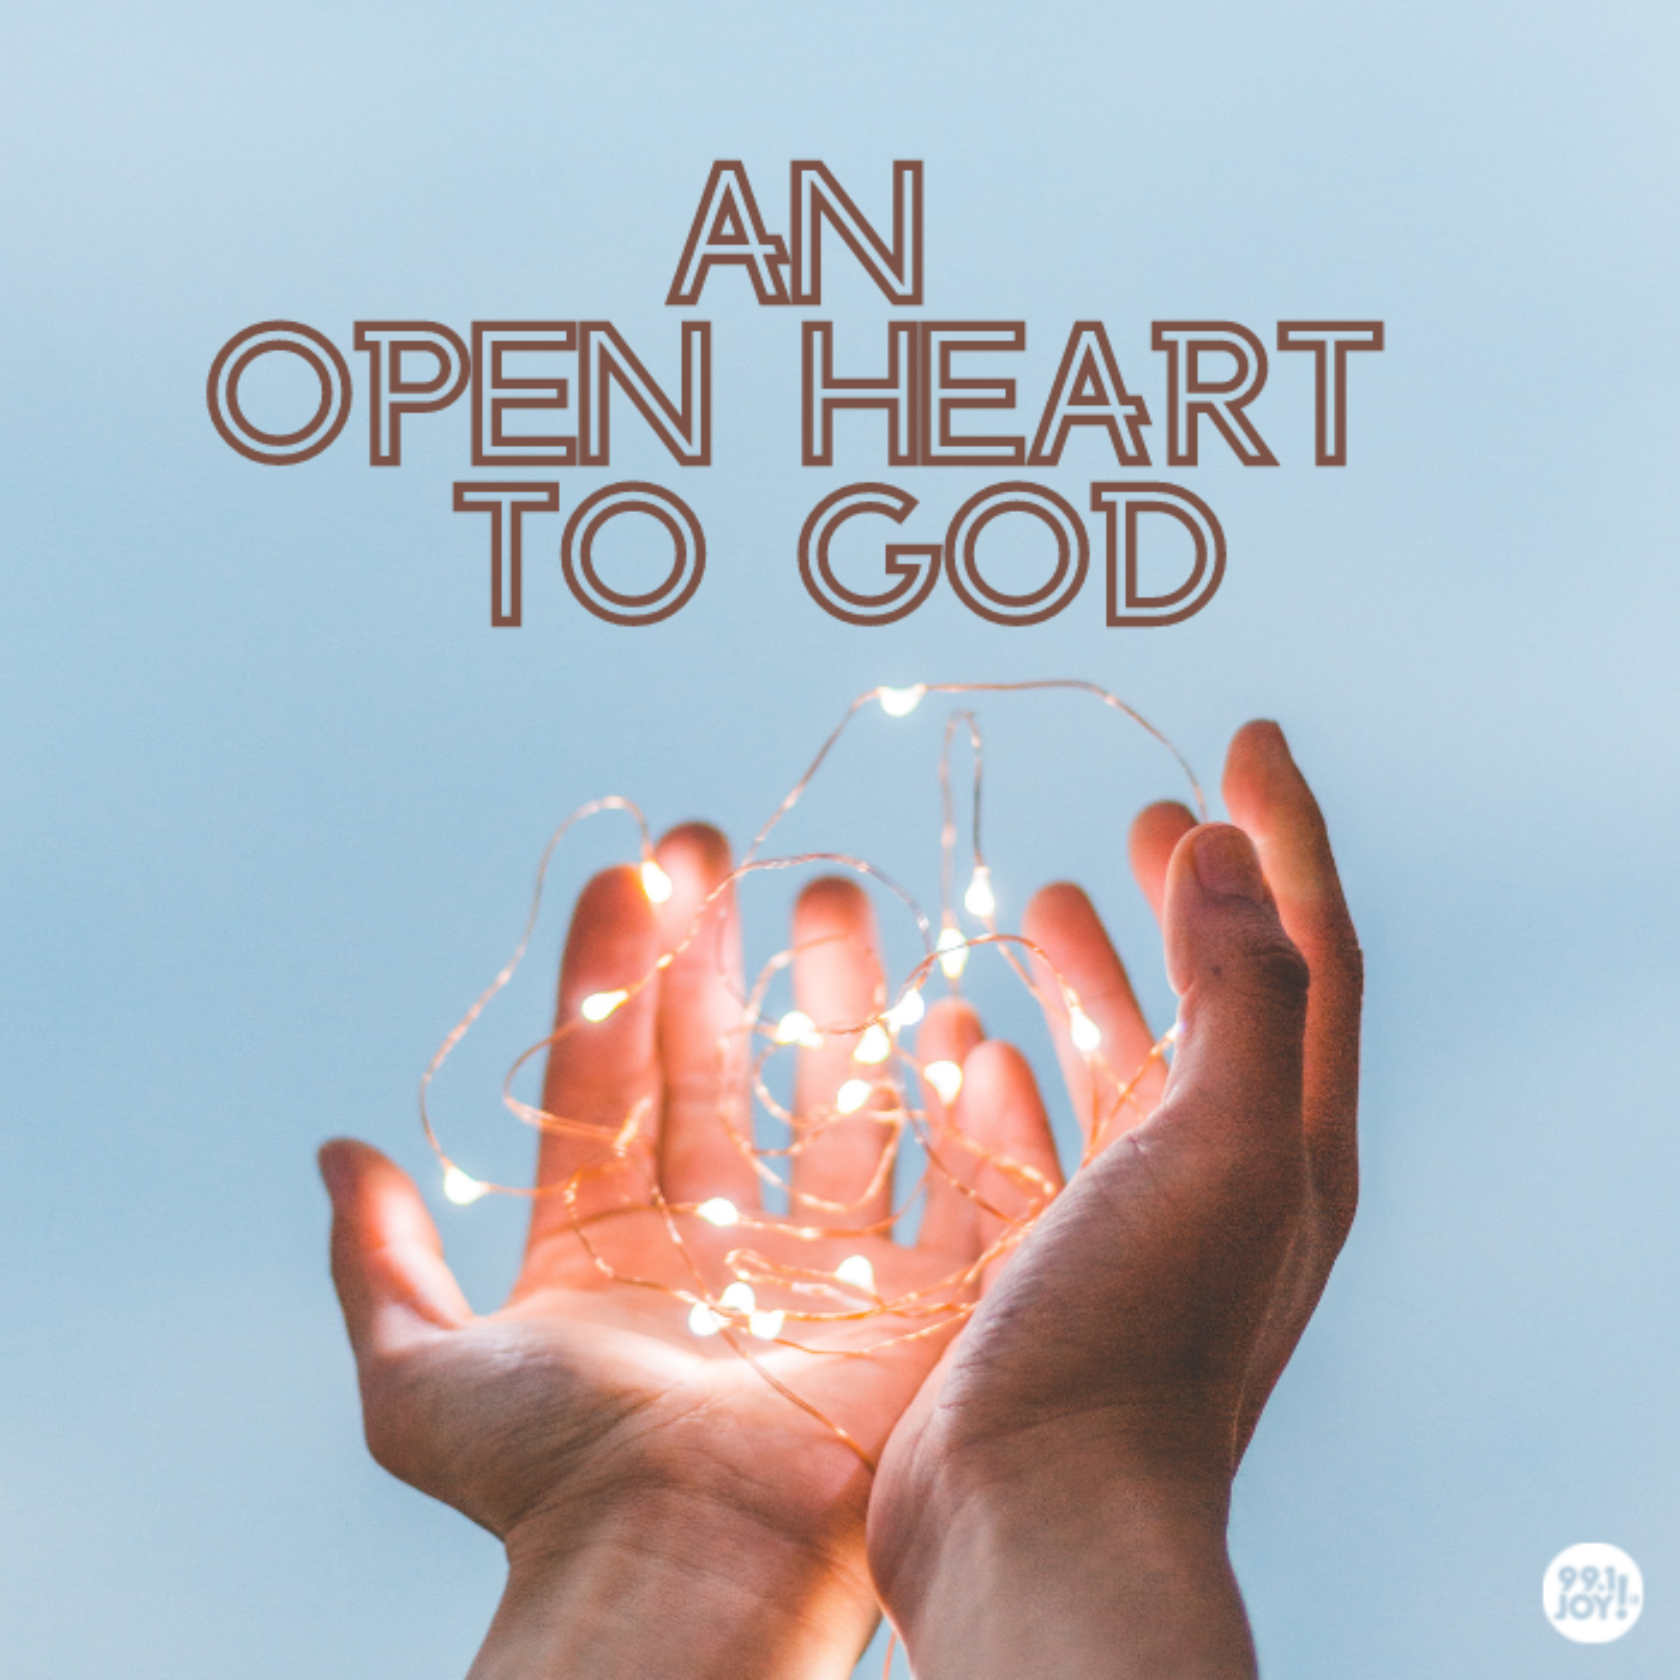 An Open Heart To God